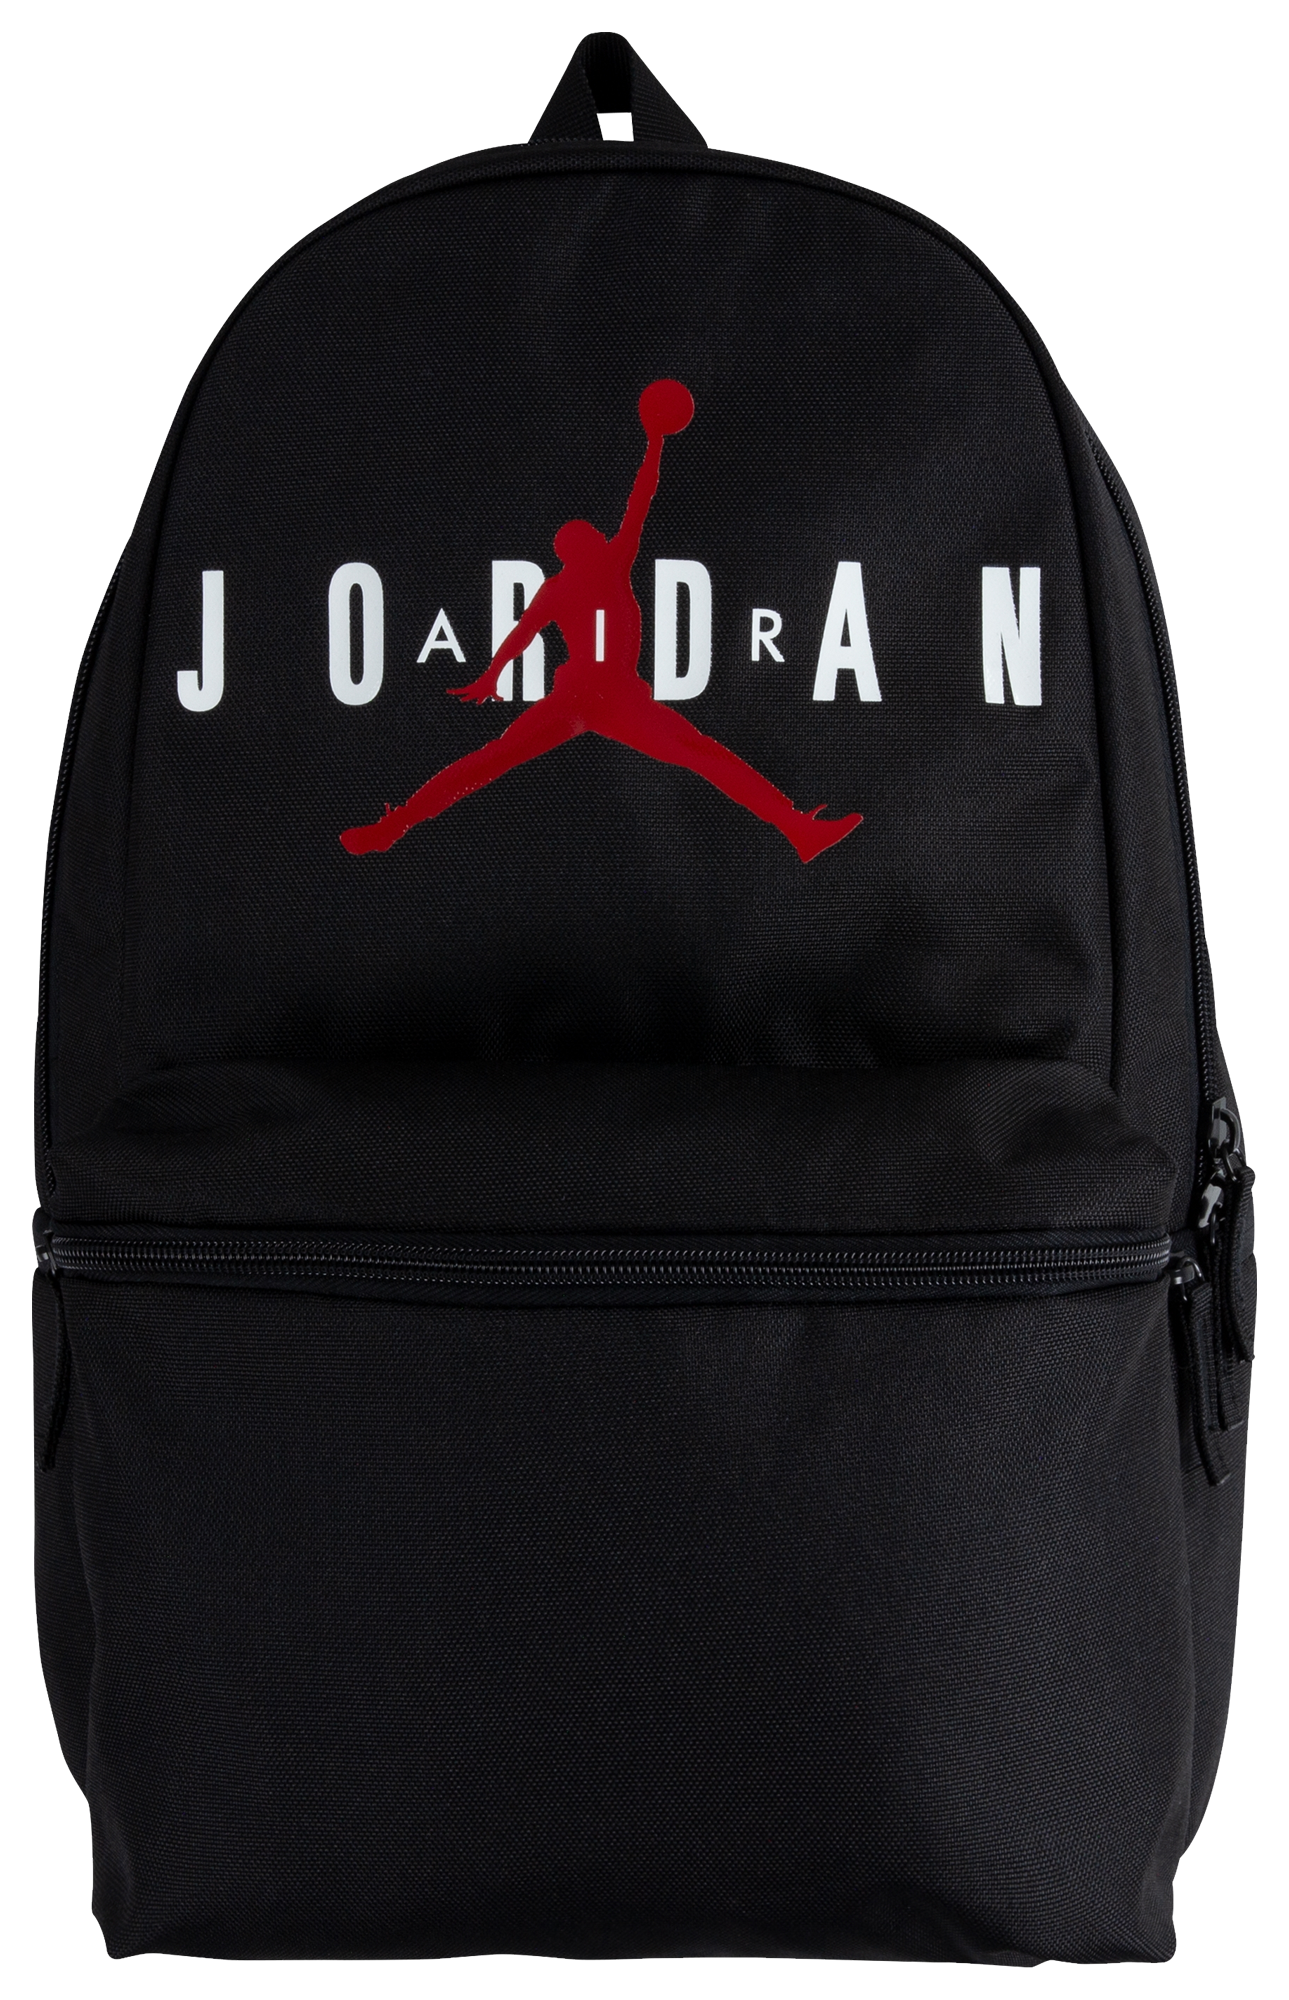 air jordan backpacks